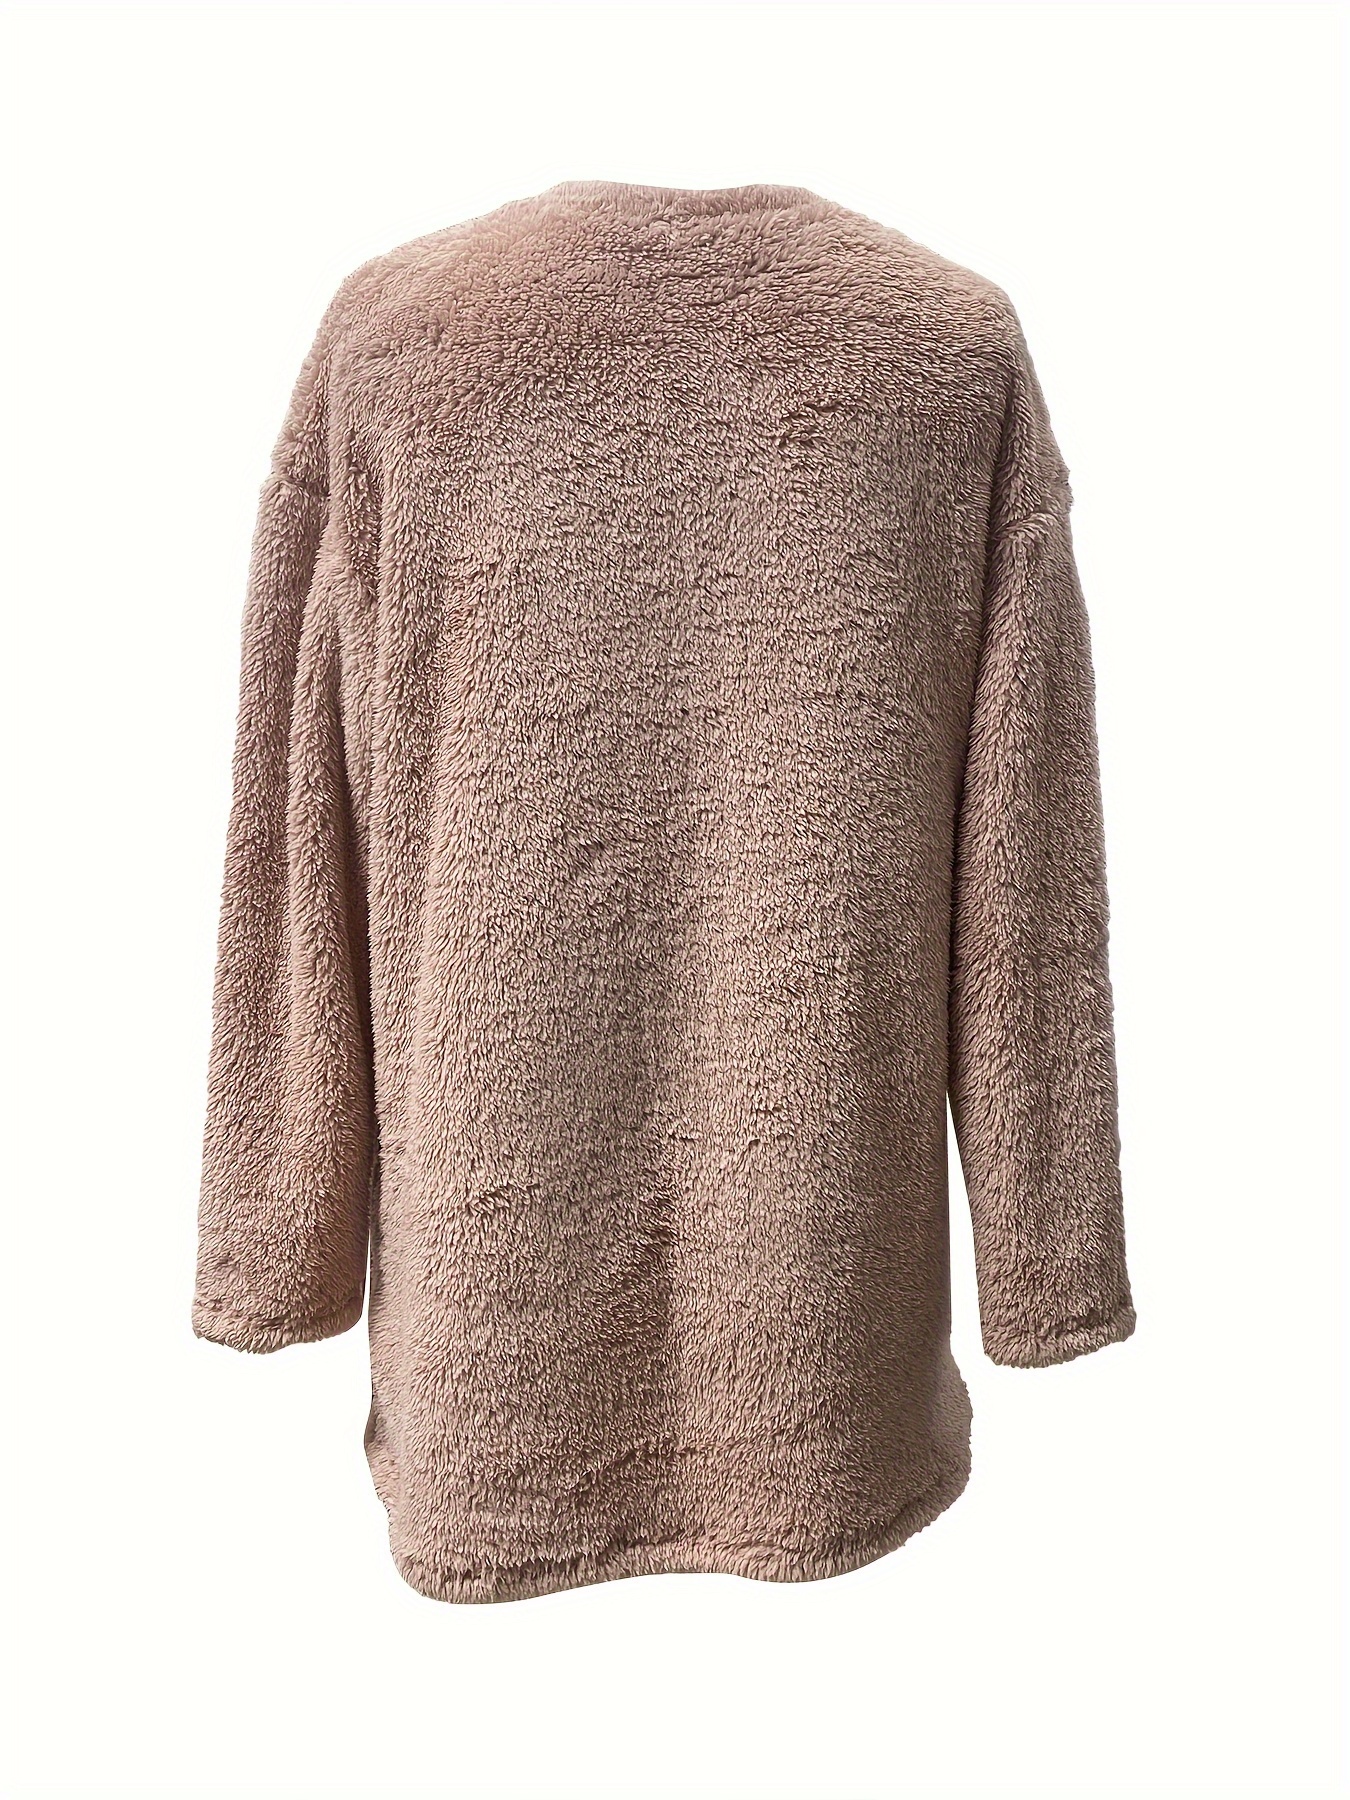 letter print patched pockets sweatshirt casual drop shoulder button decor plush sweatshirt womens clothing details 6